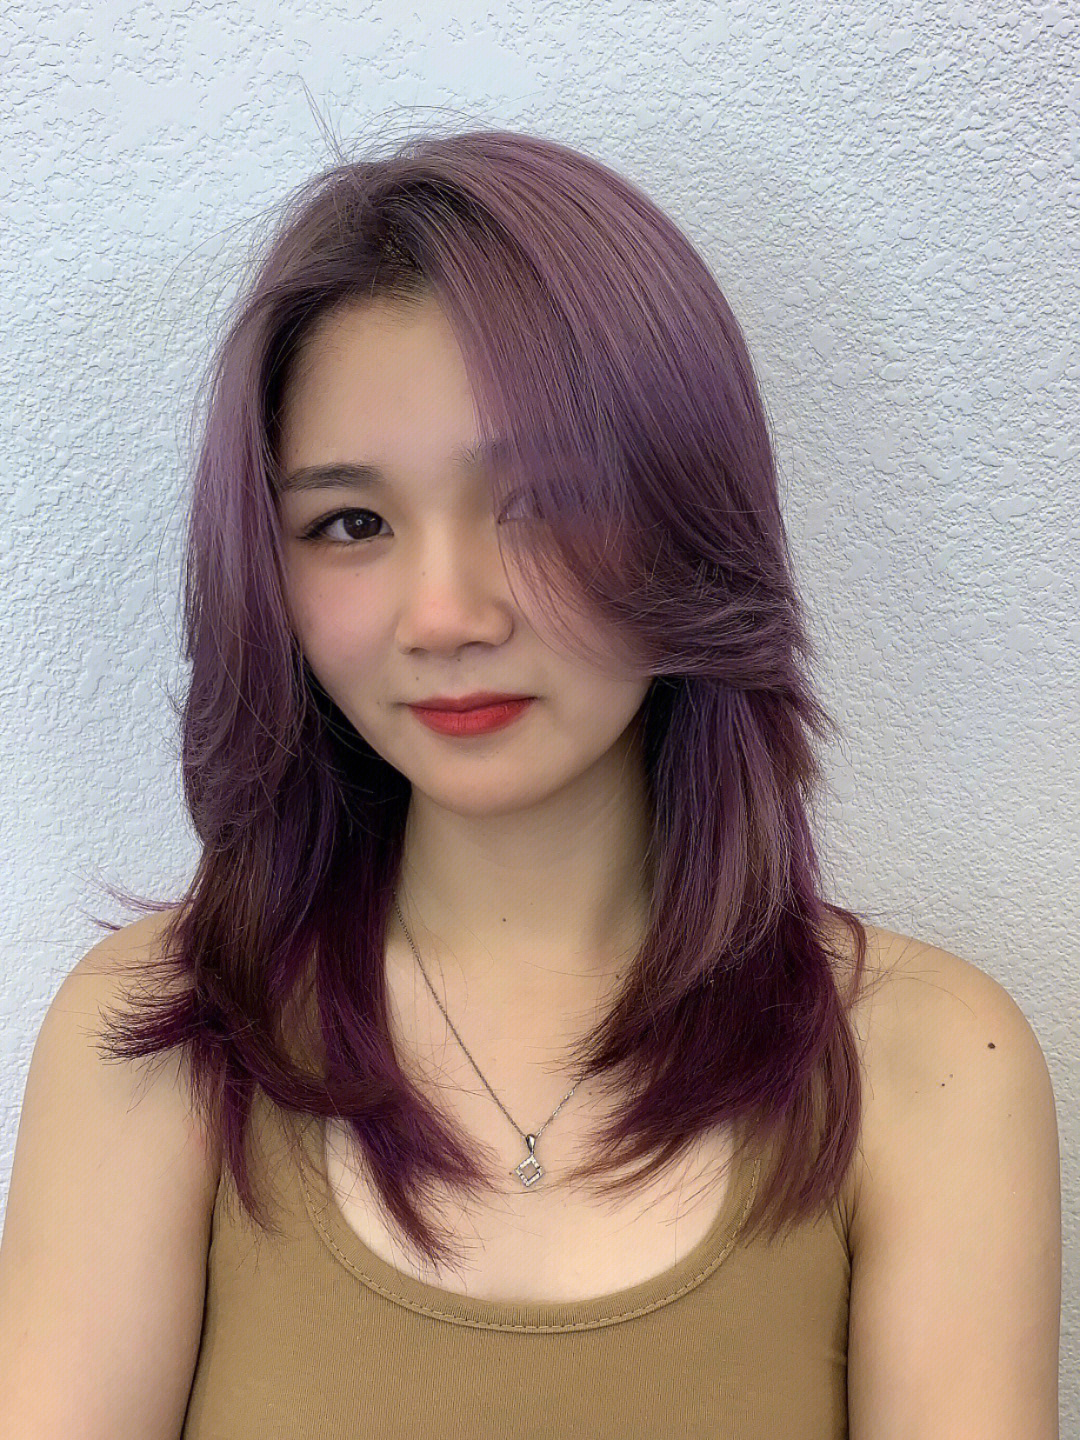 这个发色超甜!紫色系头发